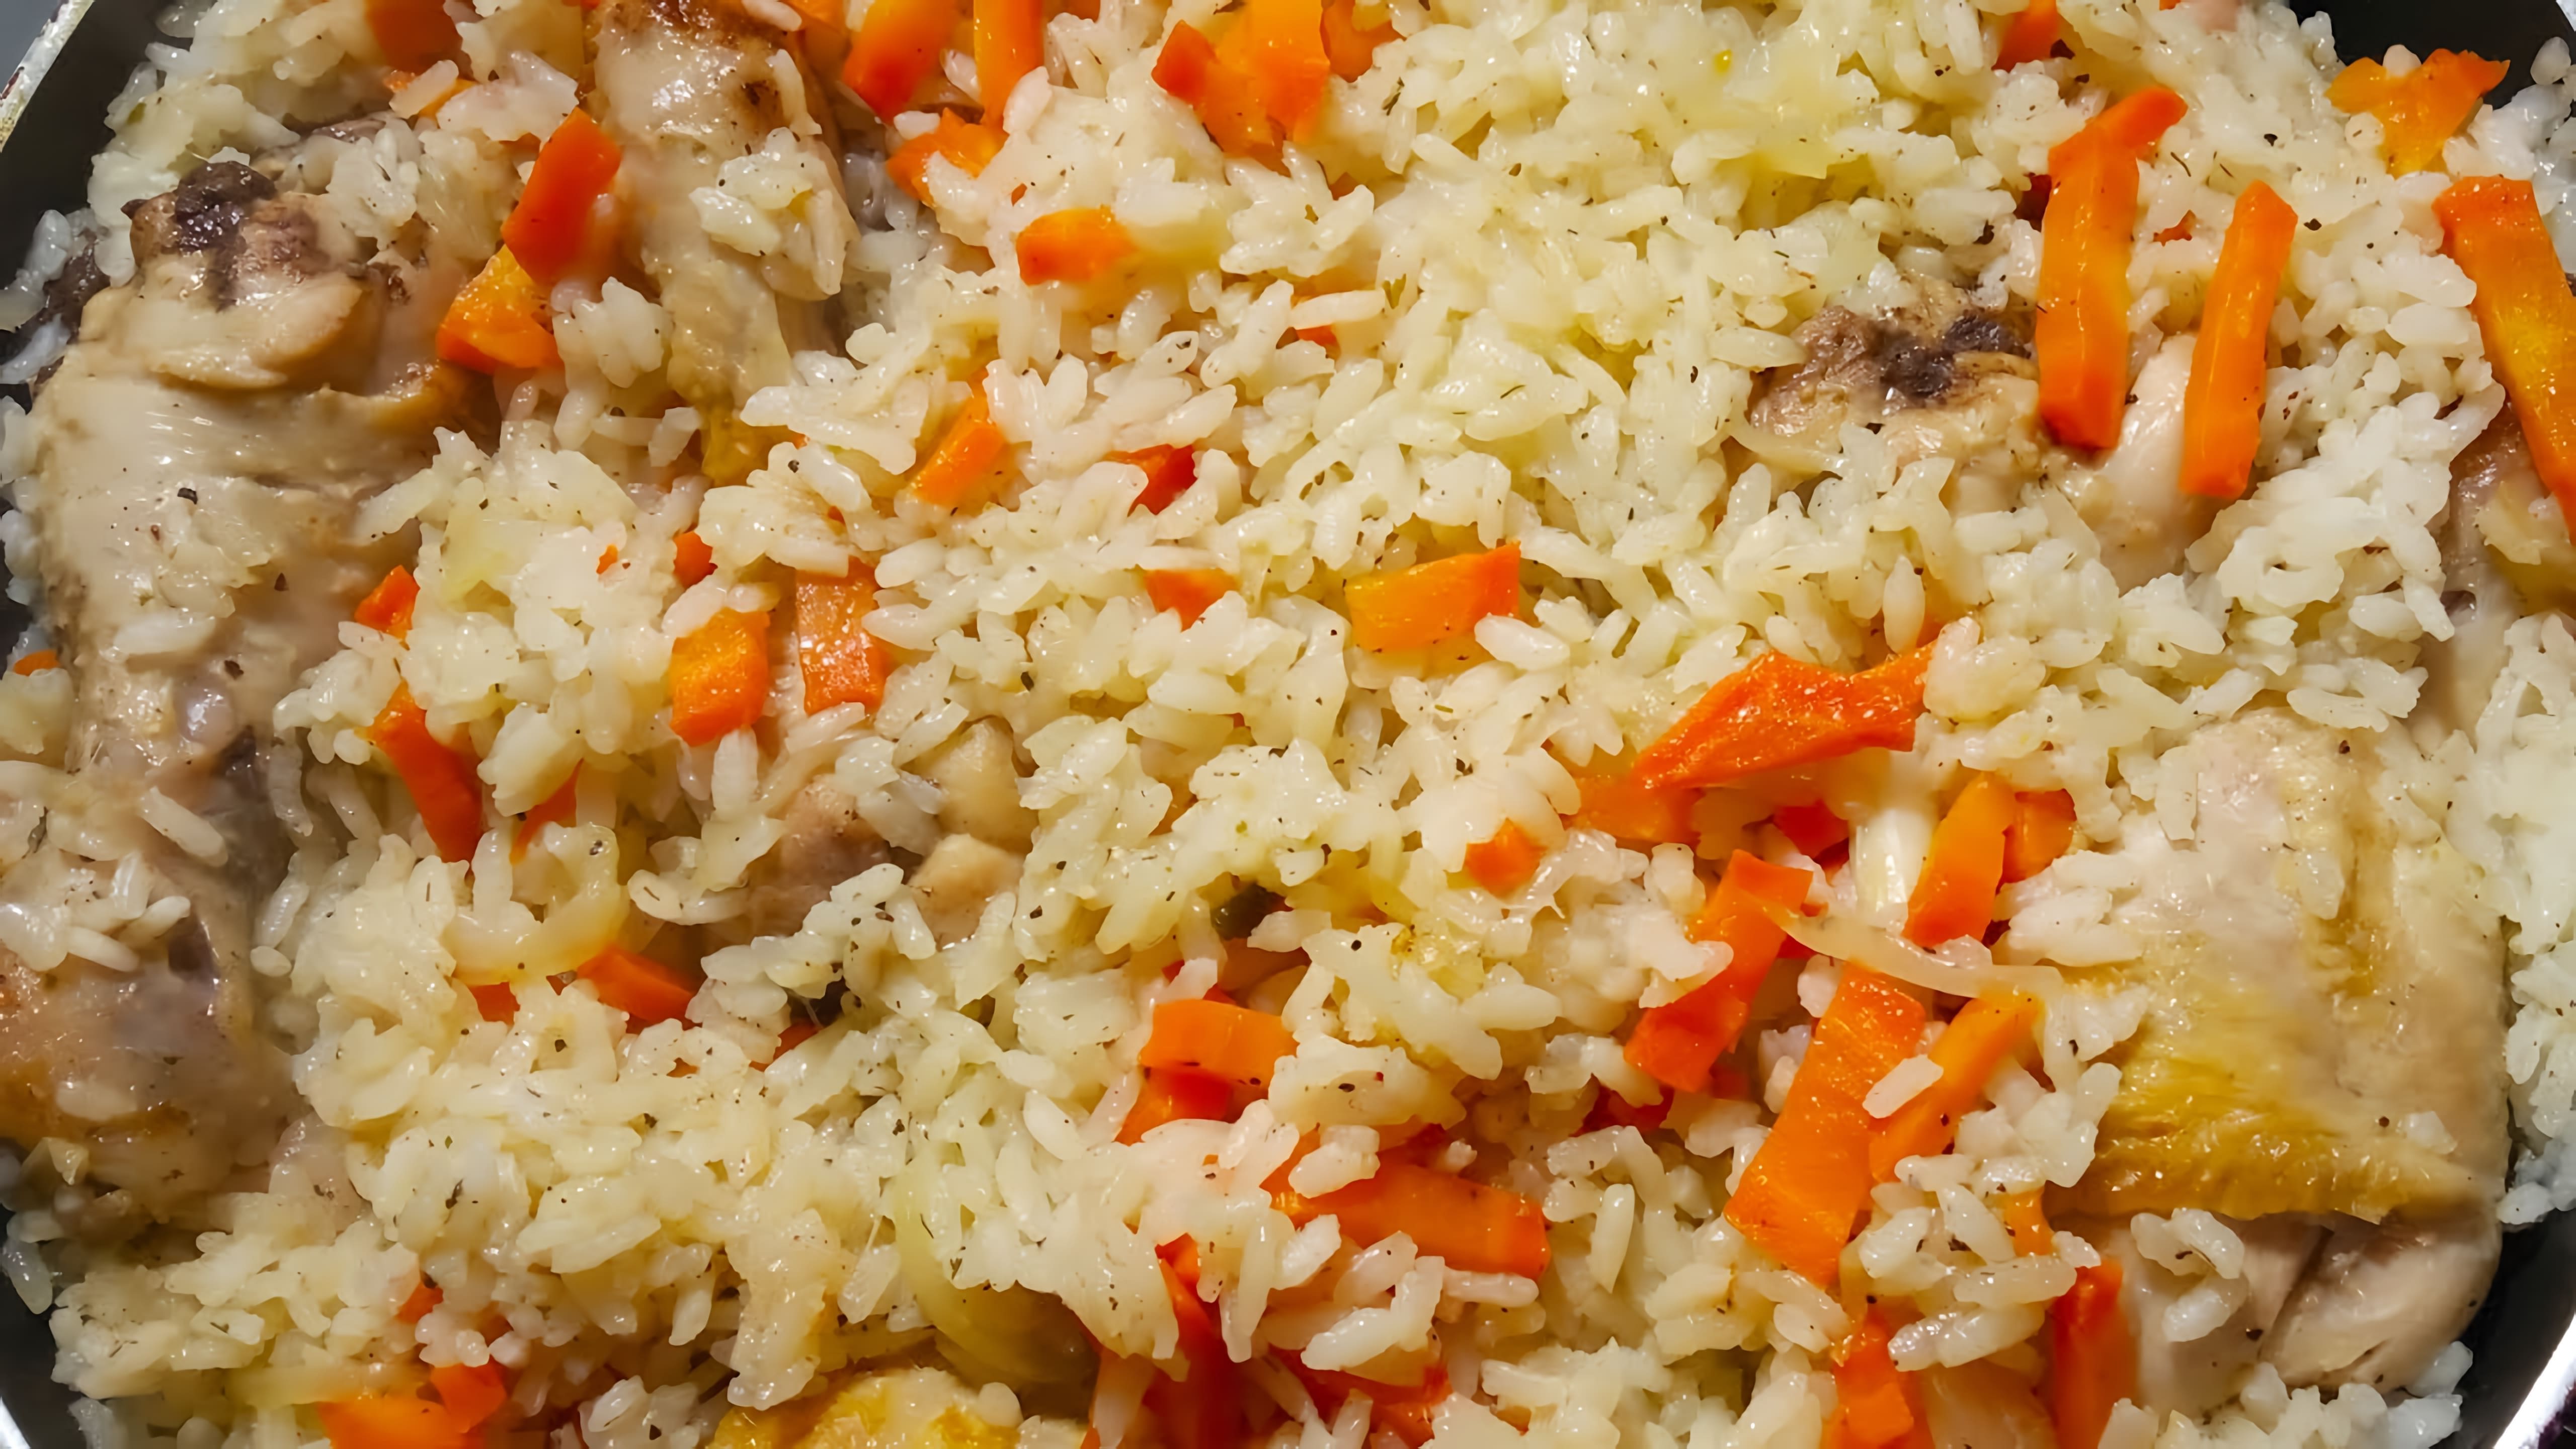 В данном видео демонстрируется процесс приготовления куриных ножек с рисом на сковороде